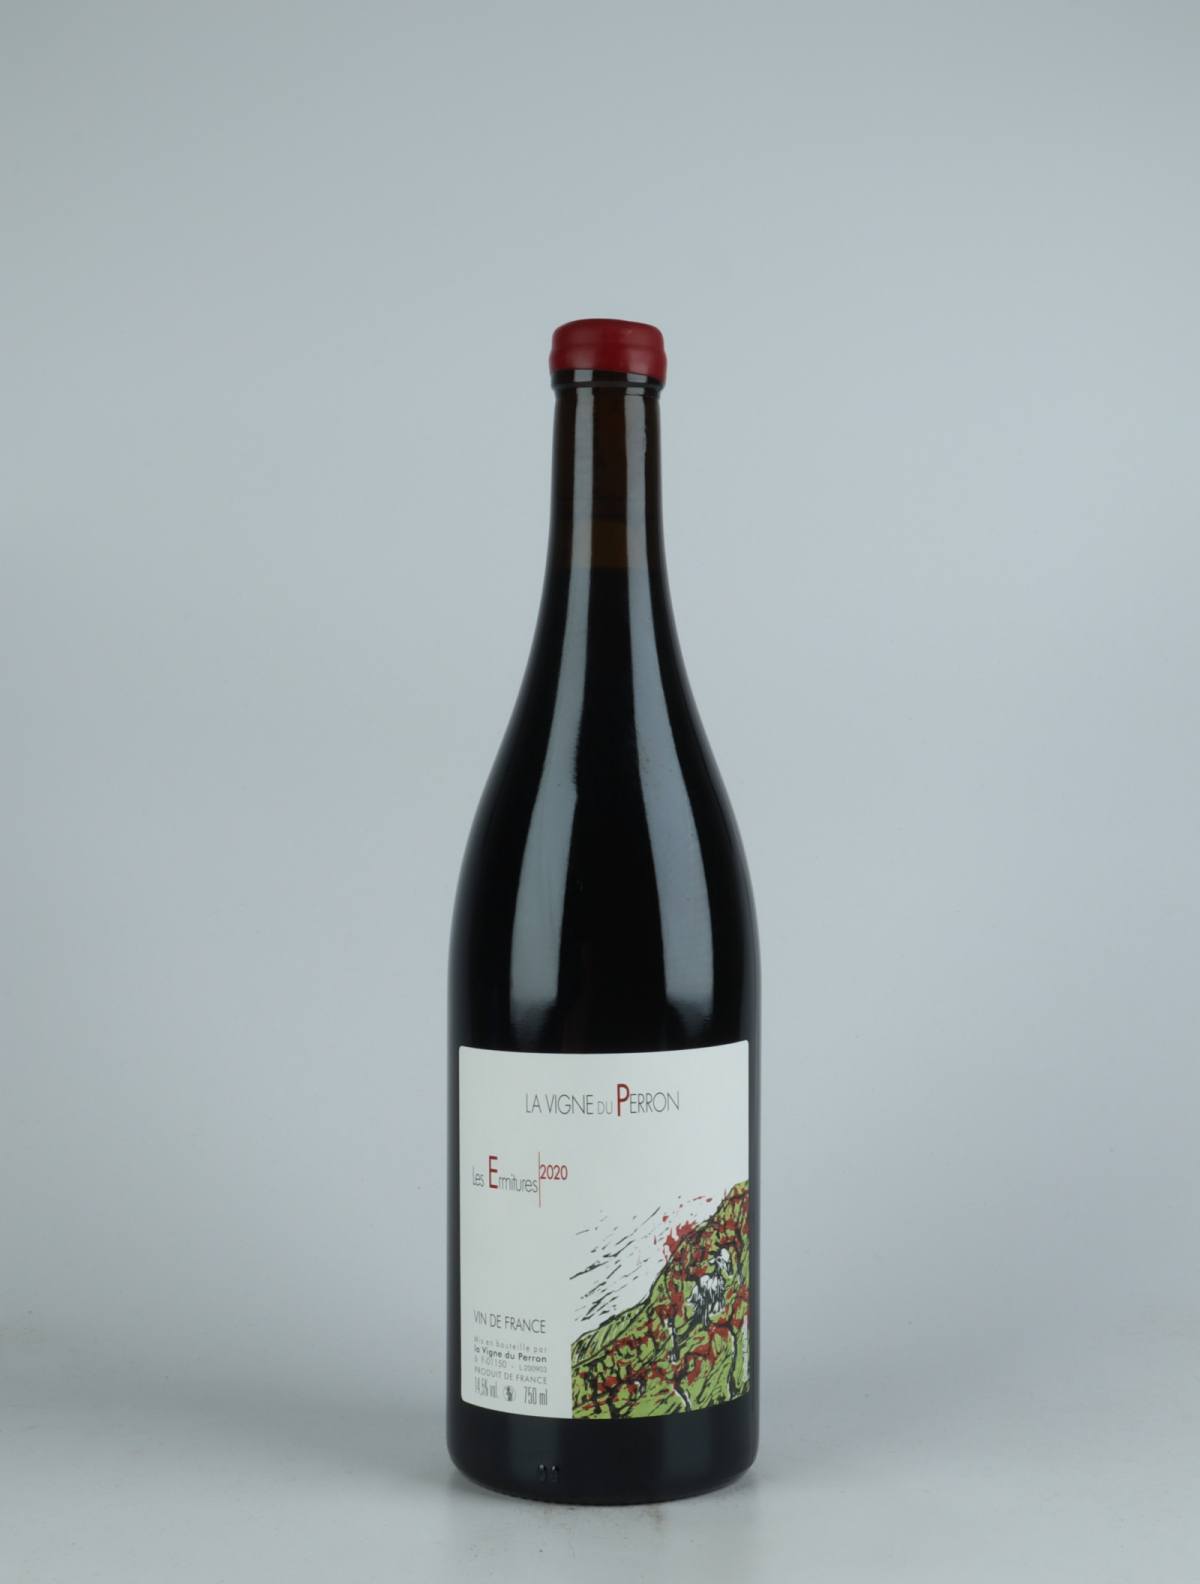 En flaske 2020 Ermitures Rødvin fra Domaine du Perron, Bugey i Frankrig